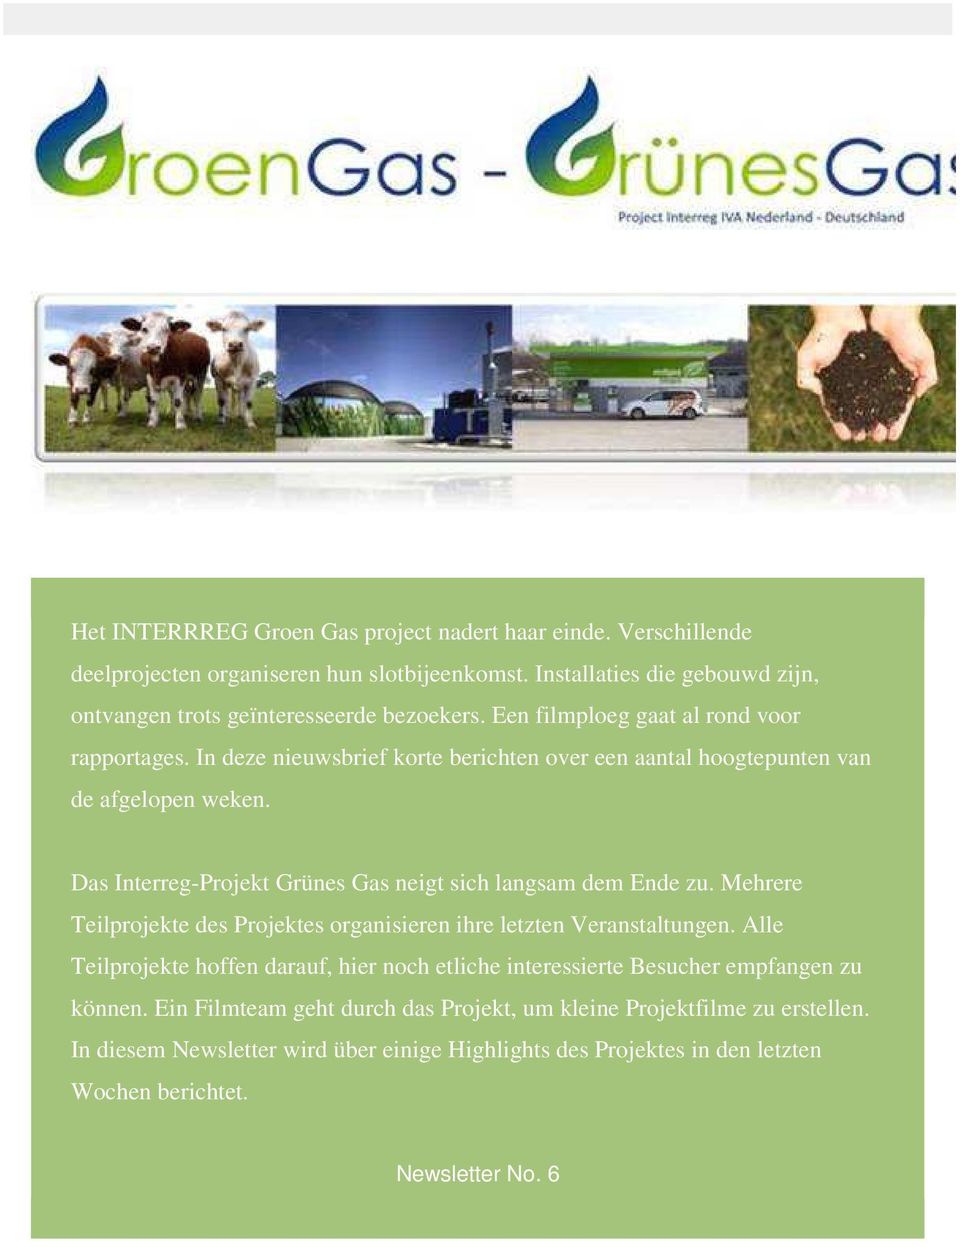 Das Interreg-Projekt Grünes Gas neigt sich langsam dem Ende zu. Mehrere Teilprojekte des Projektes organisieren ihre letzten Veranstaltungen.